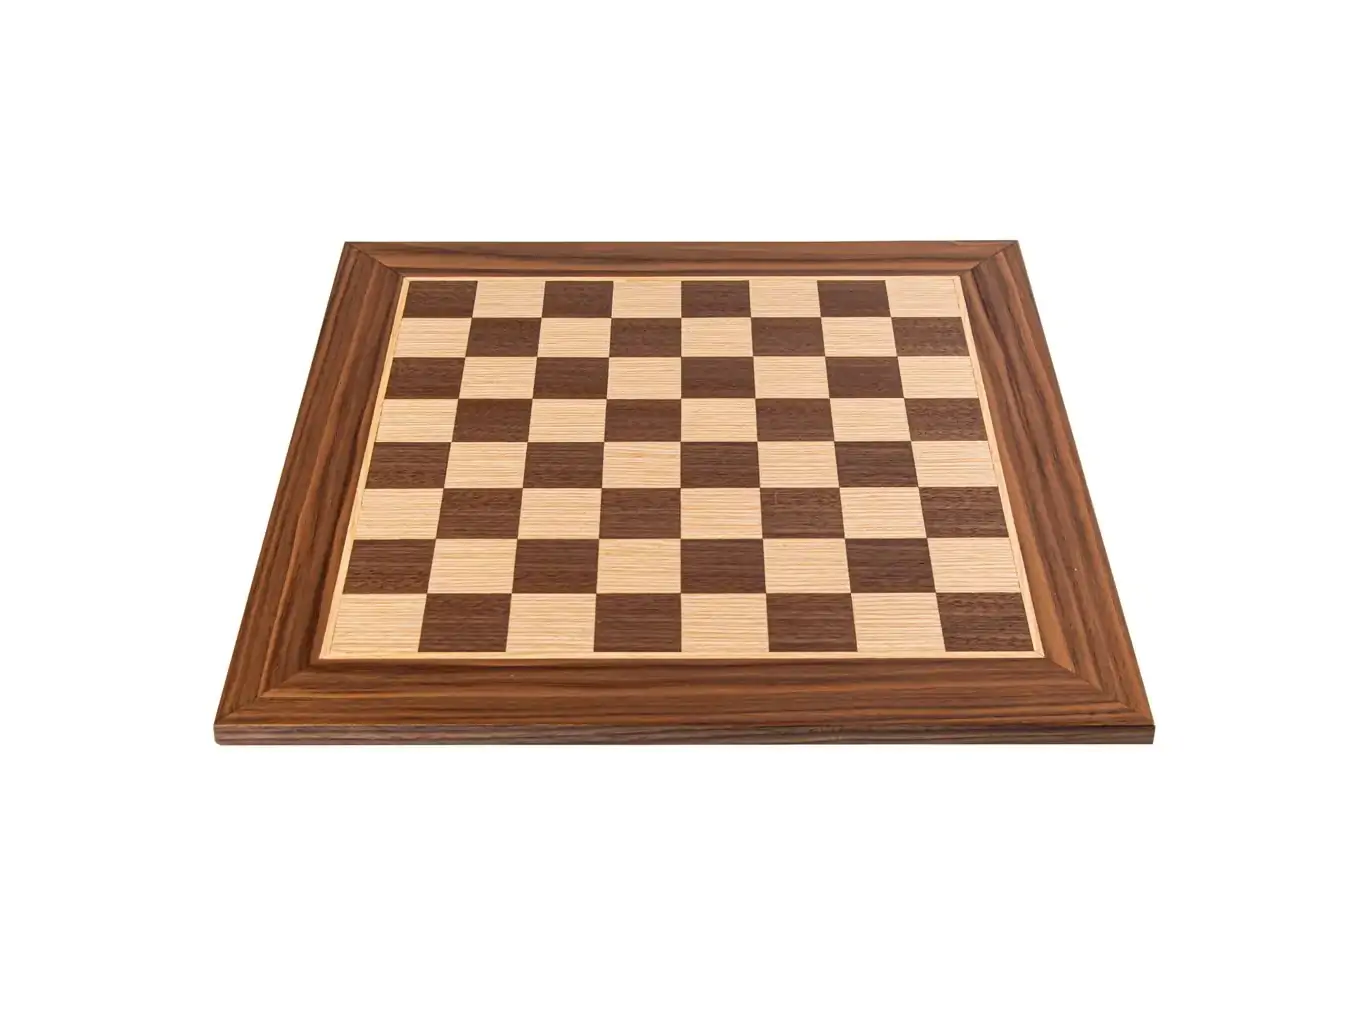 Ξύλινη σκακιέρα καρυδιά και δρυς 50x50 | Χειροποίητη ξύλινη σκακιέρα